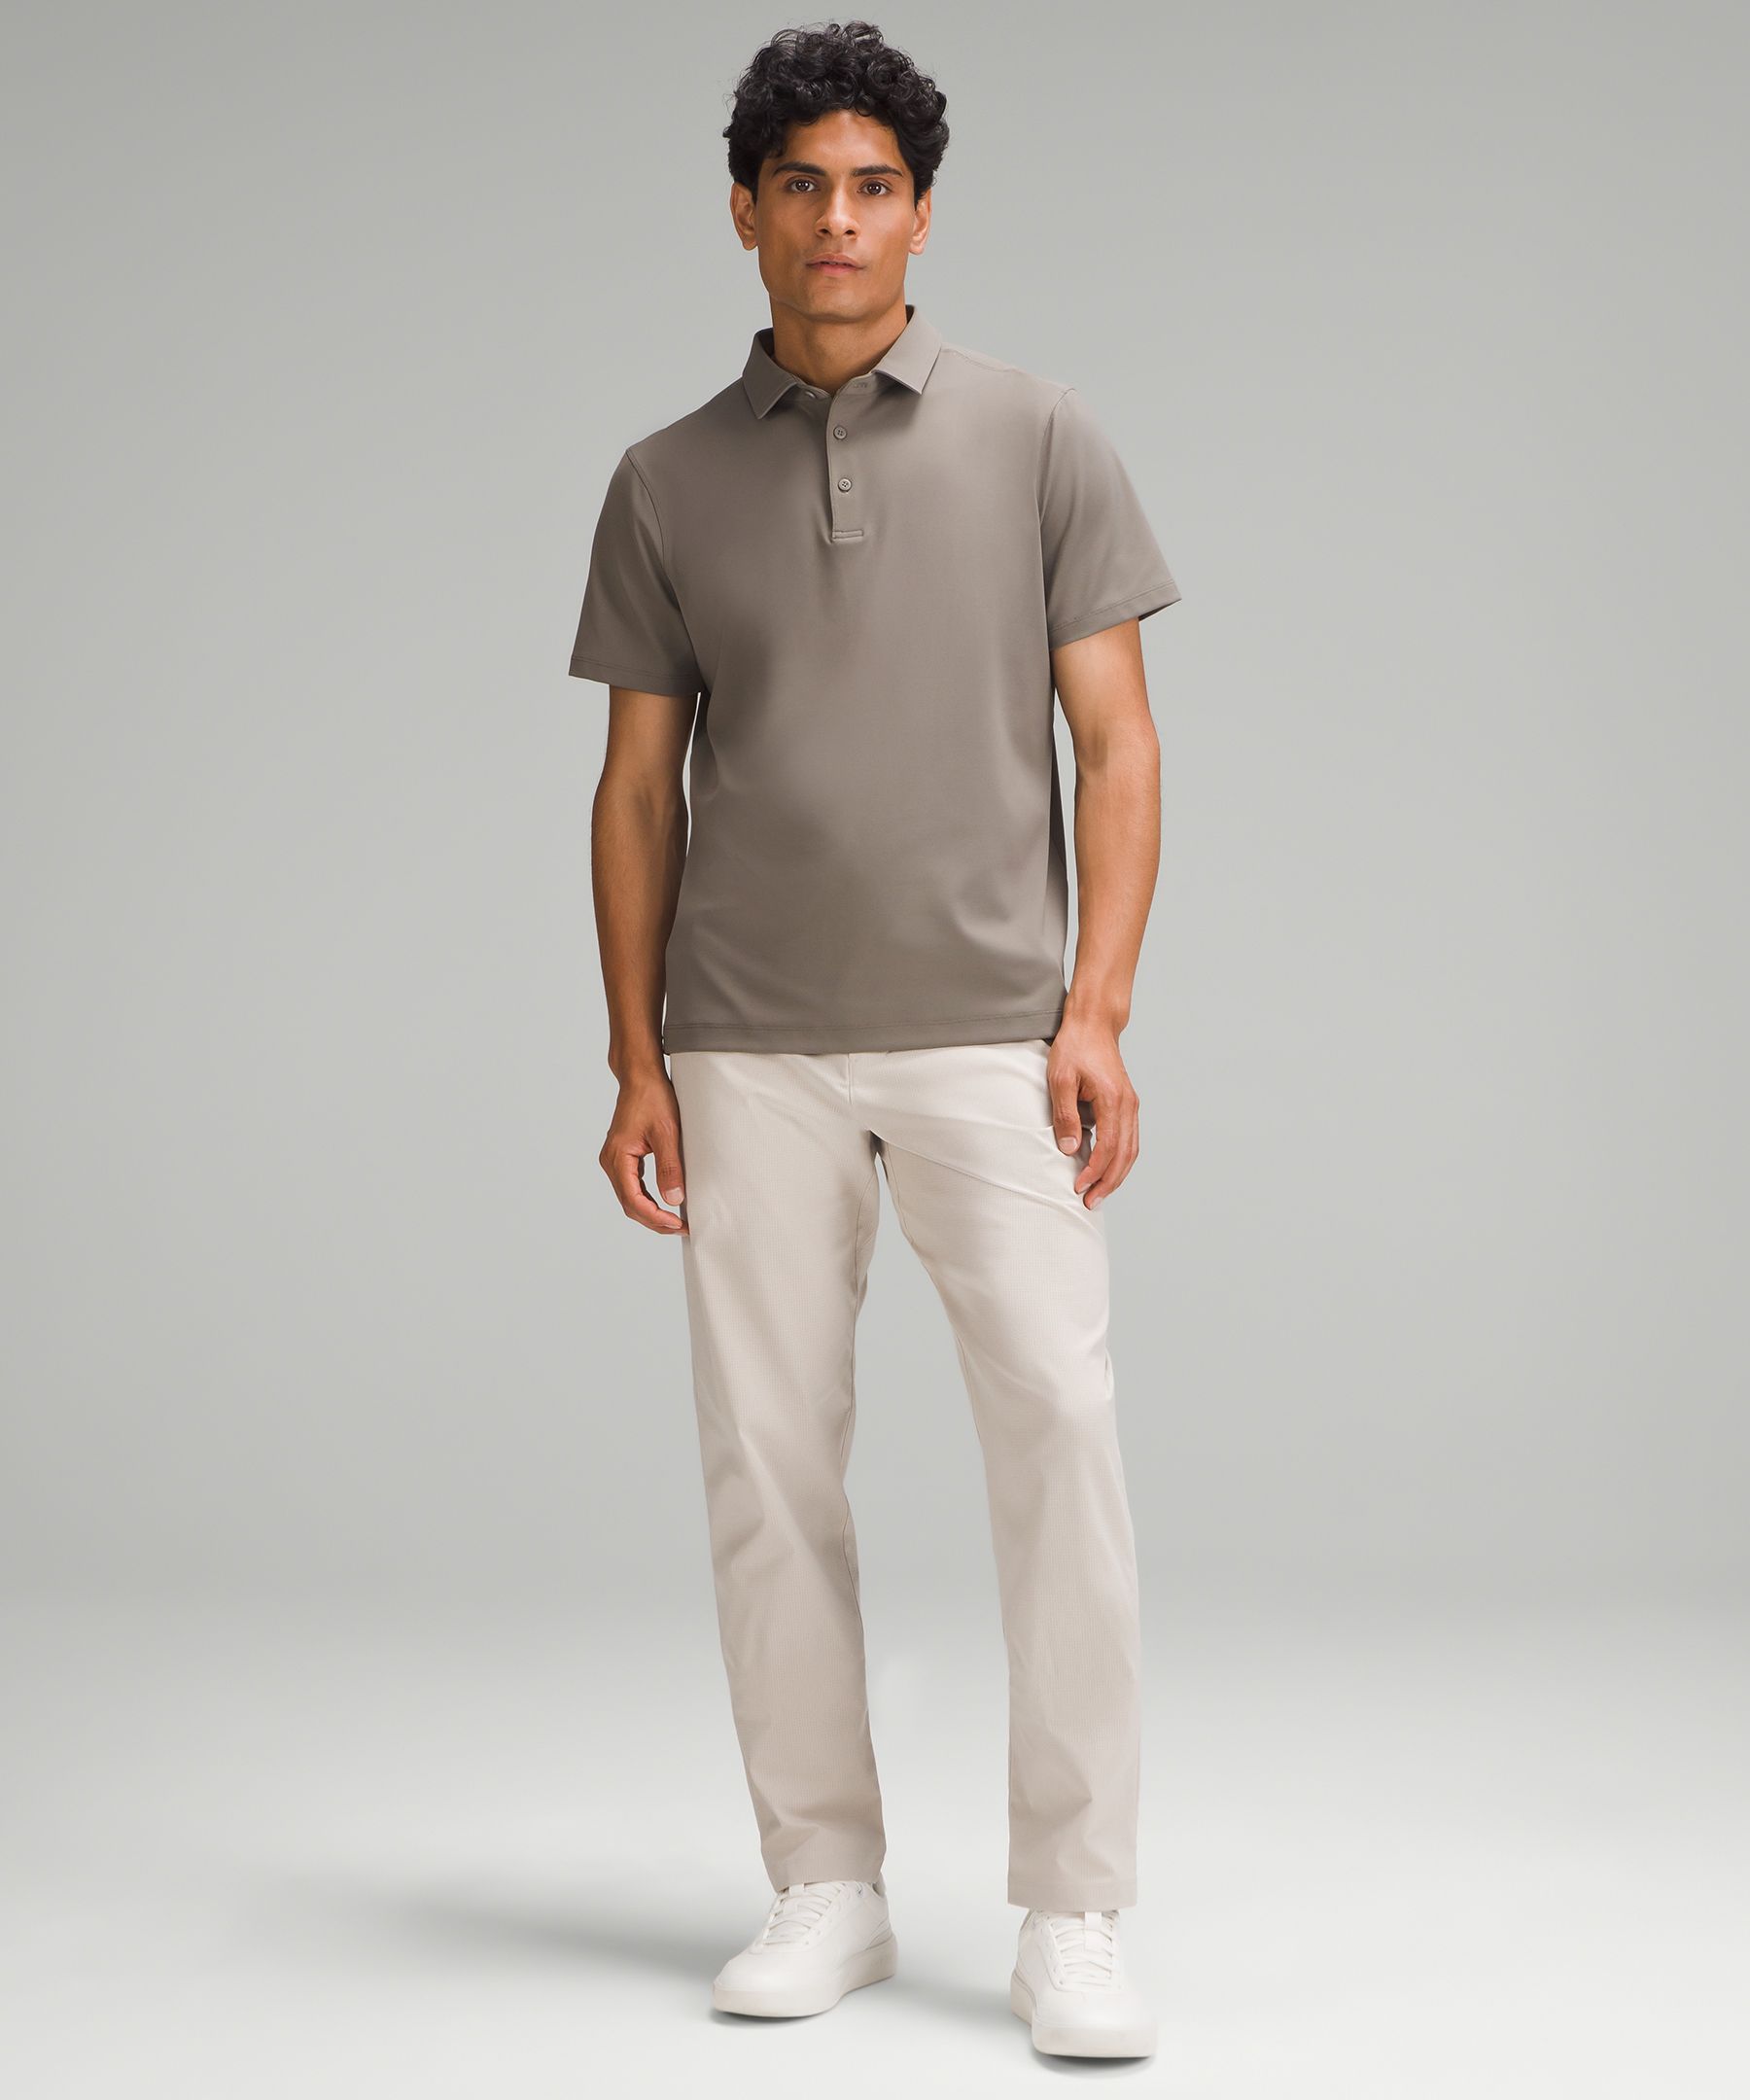 ShowZero™ Polo | Men's Short Sleeve Shirts & Tee's